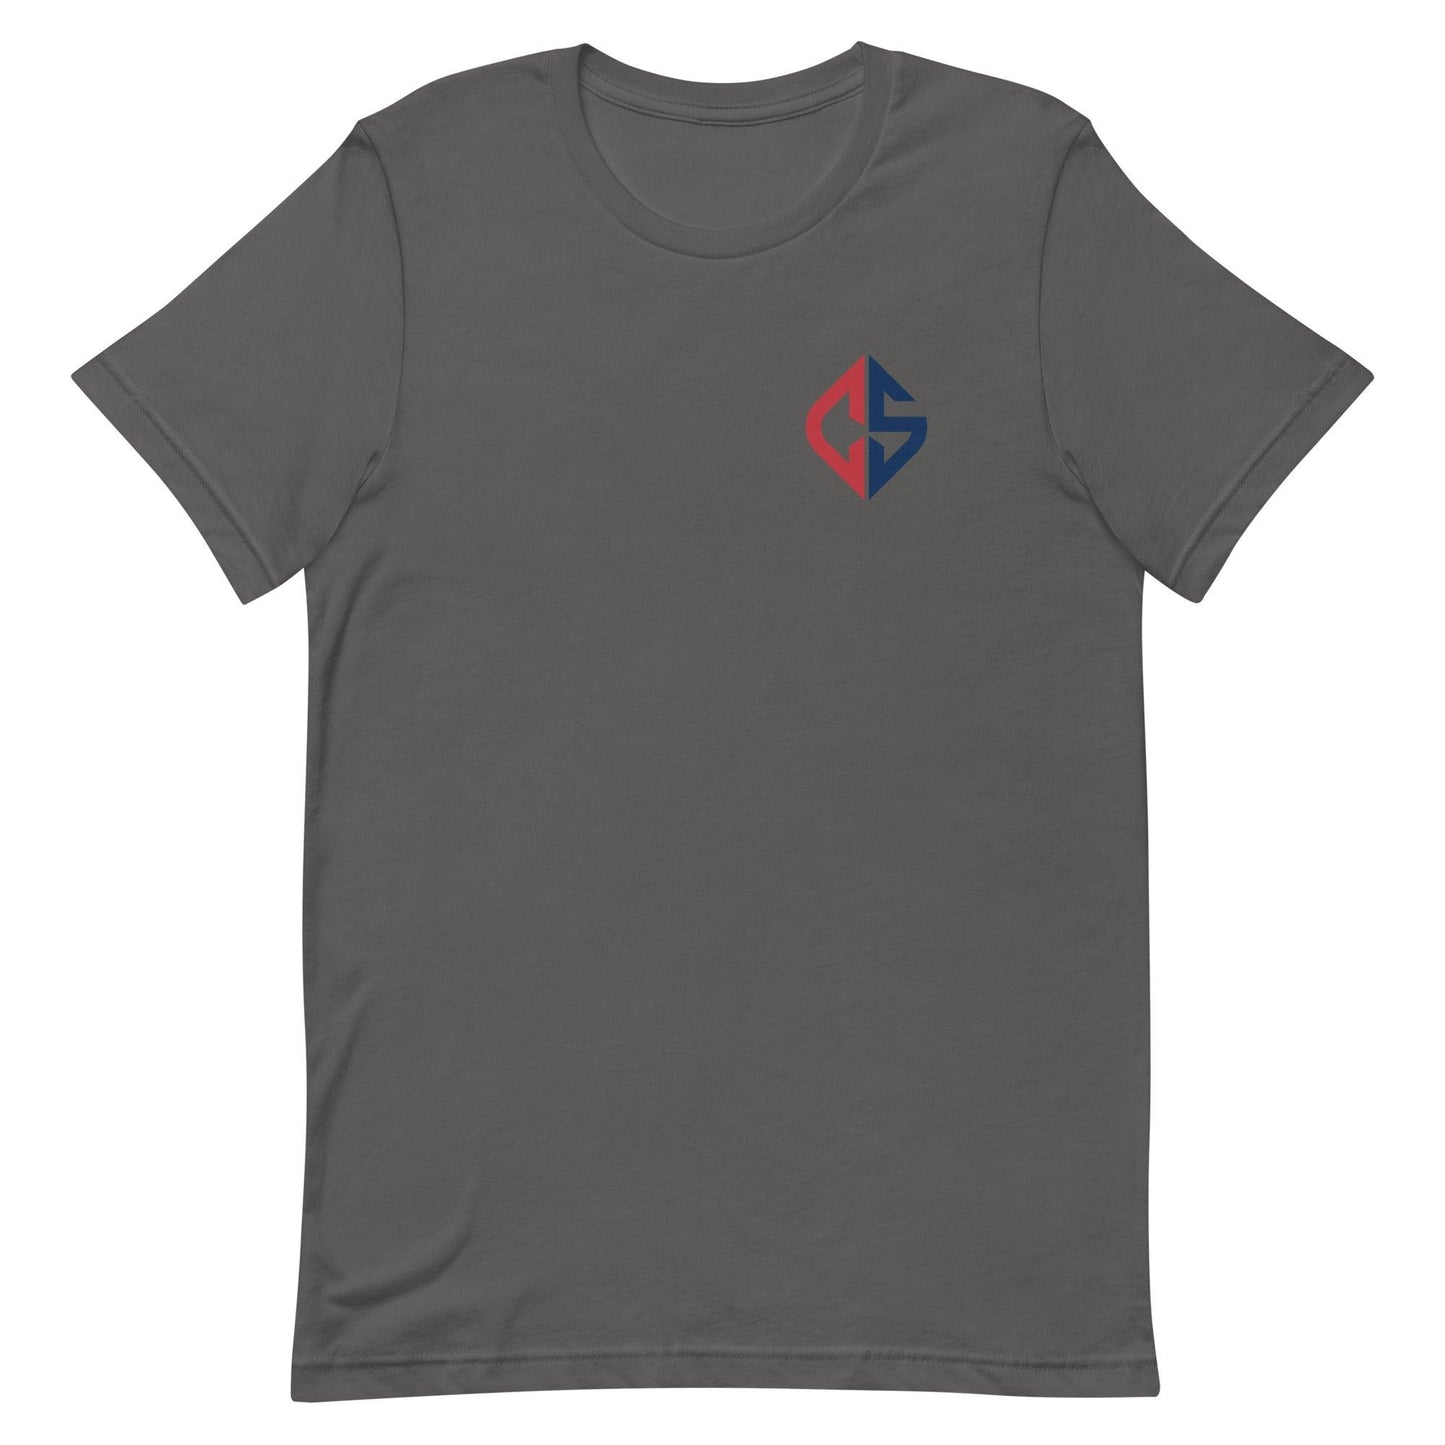 Chris Sale "Elite" t-shirt - Fan Arch